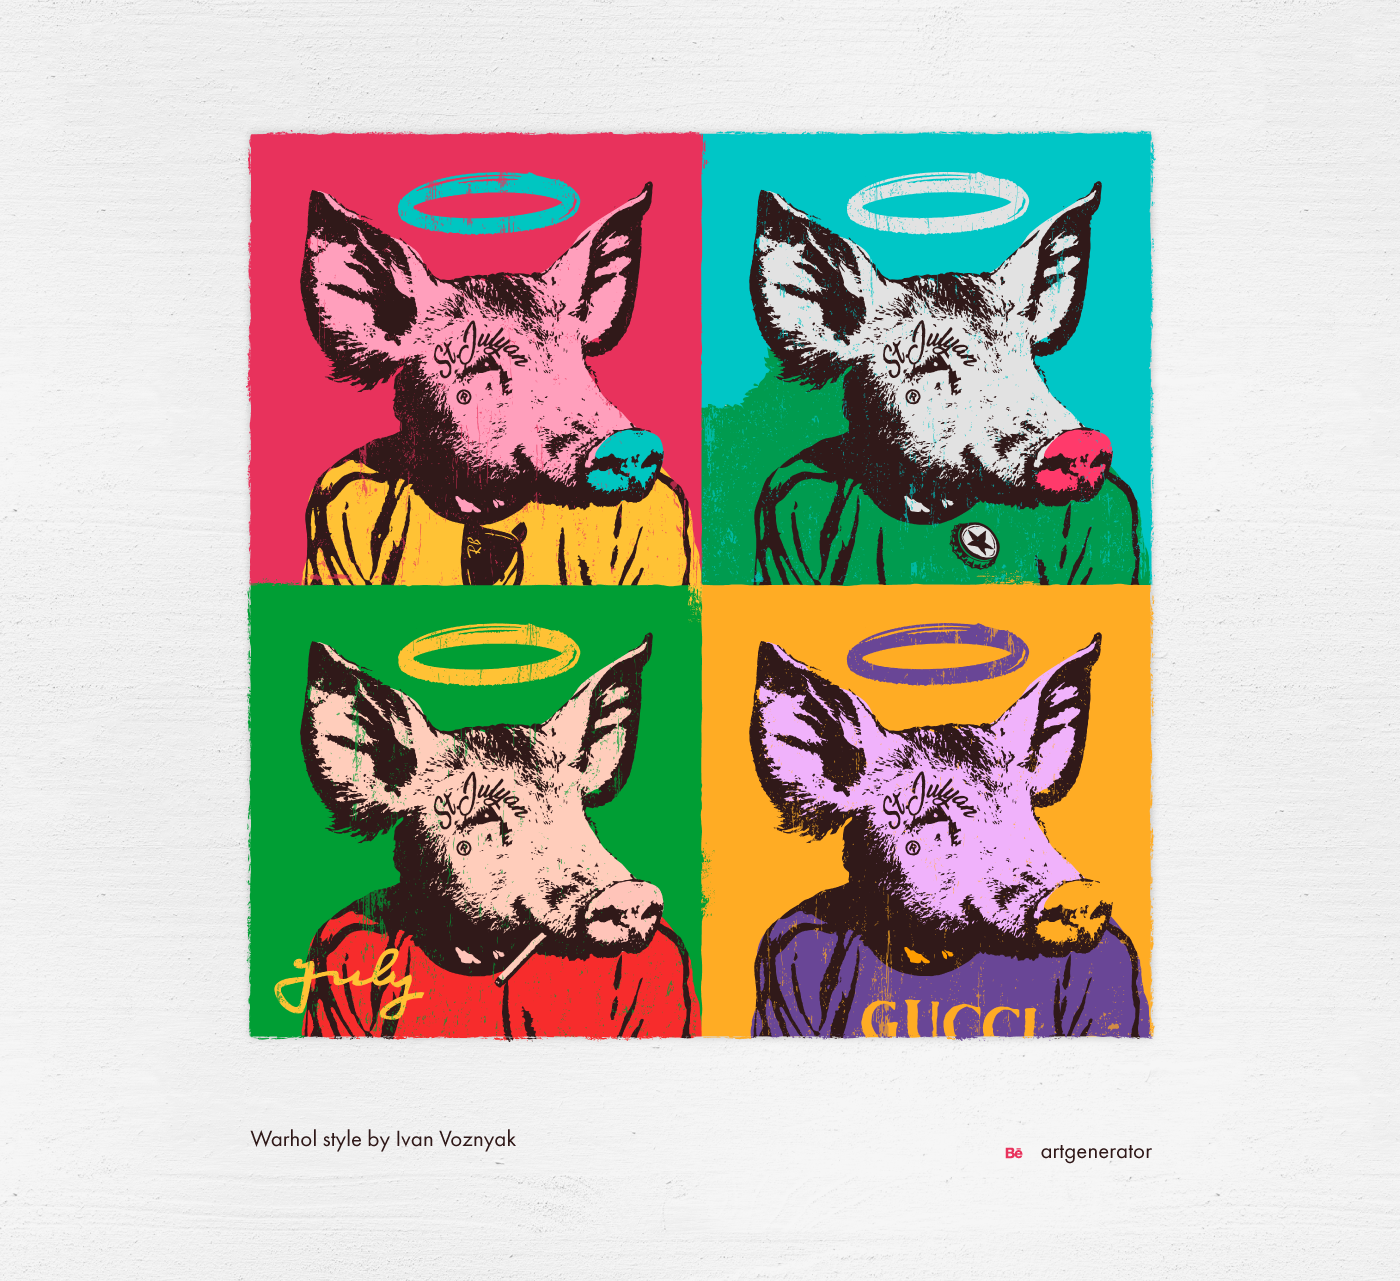 free calendar free calendar calendar 2019 pig art Picasso malevich warhol van gogh